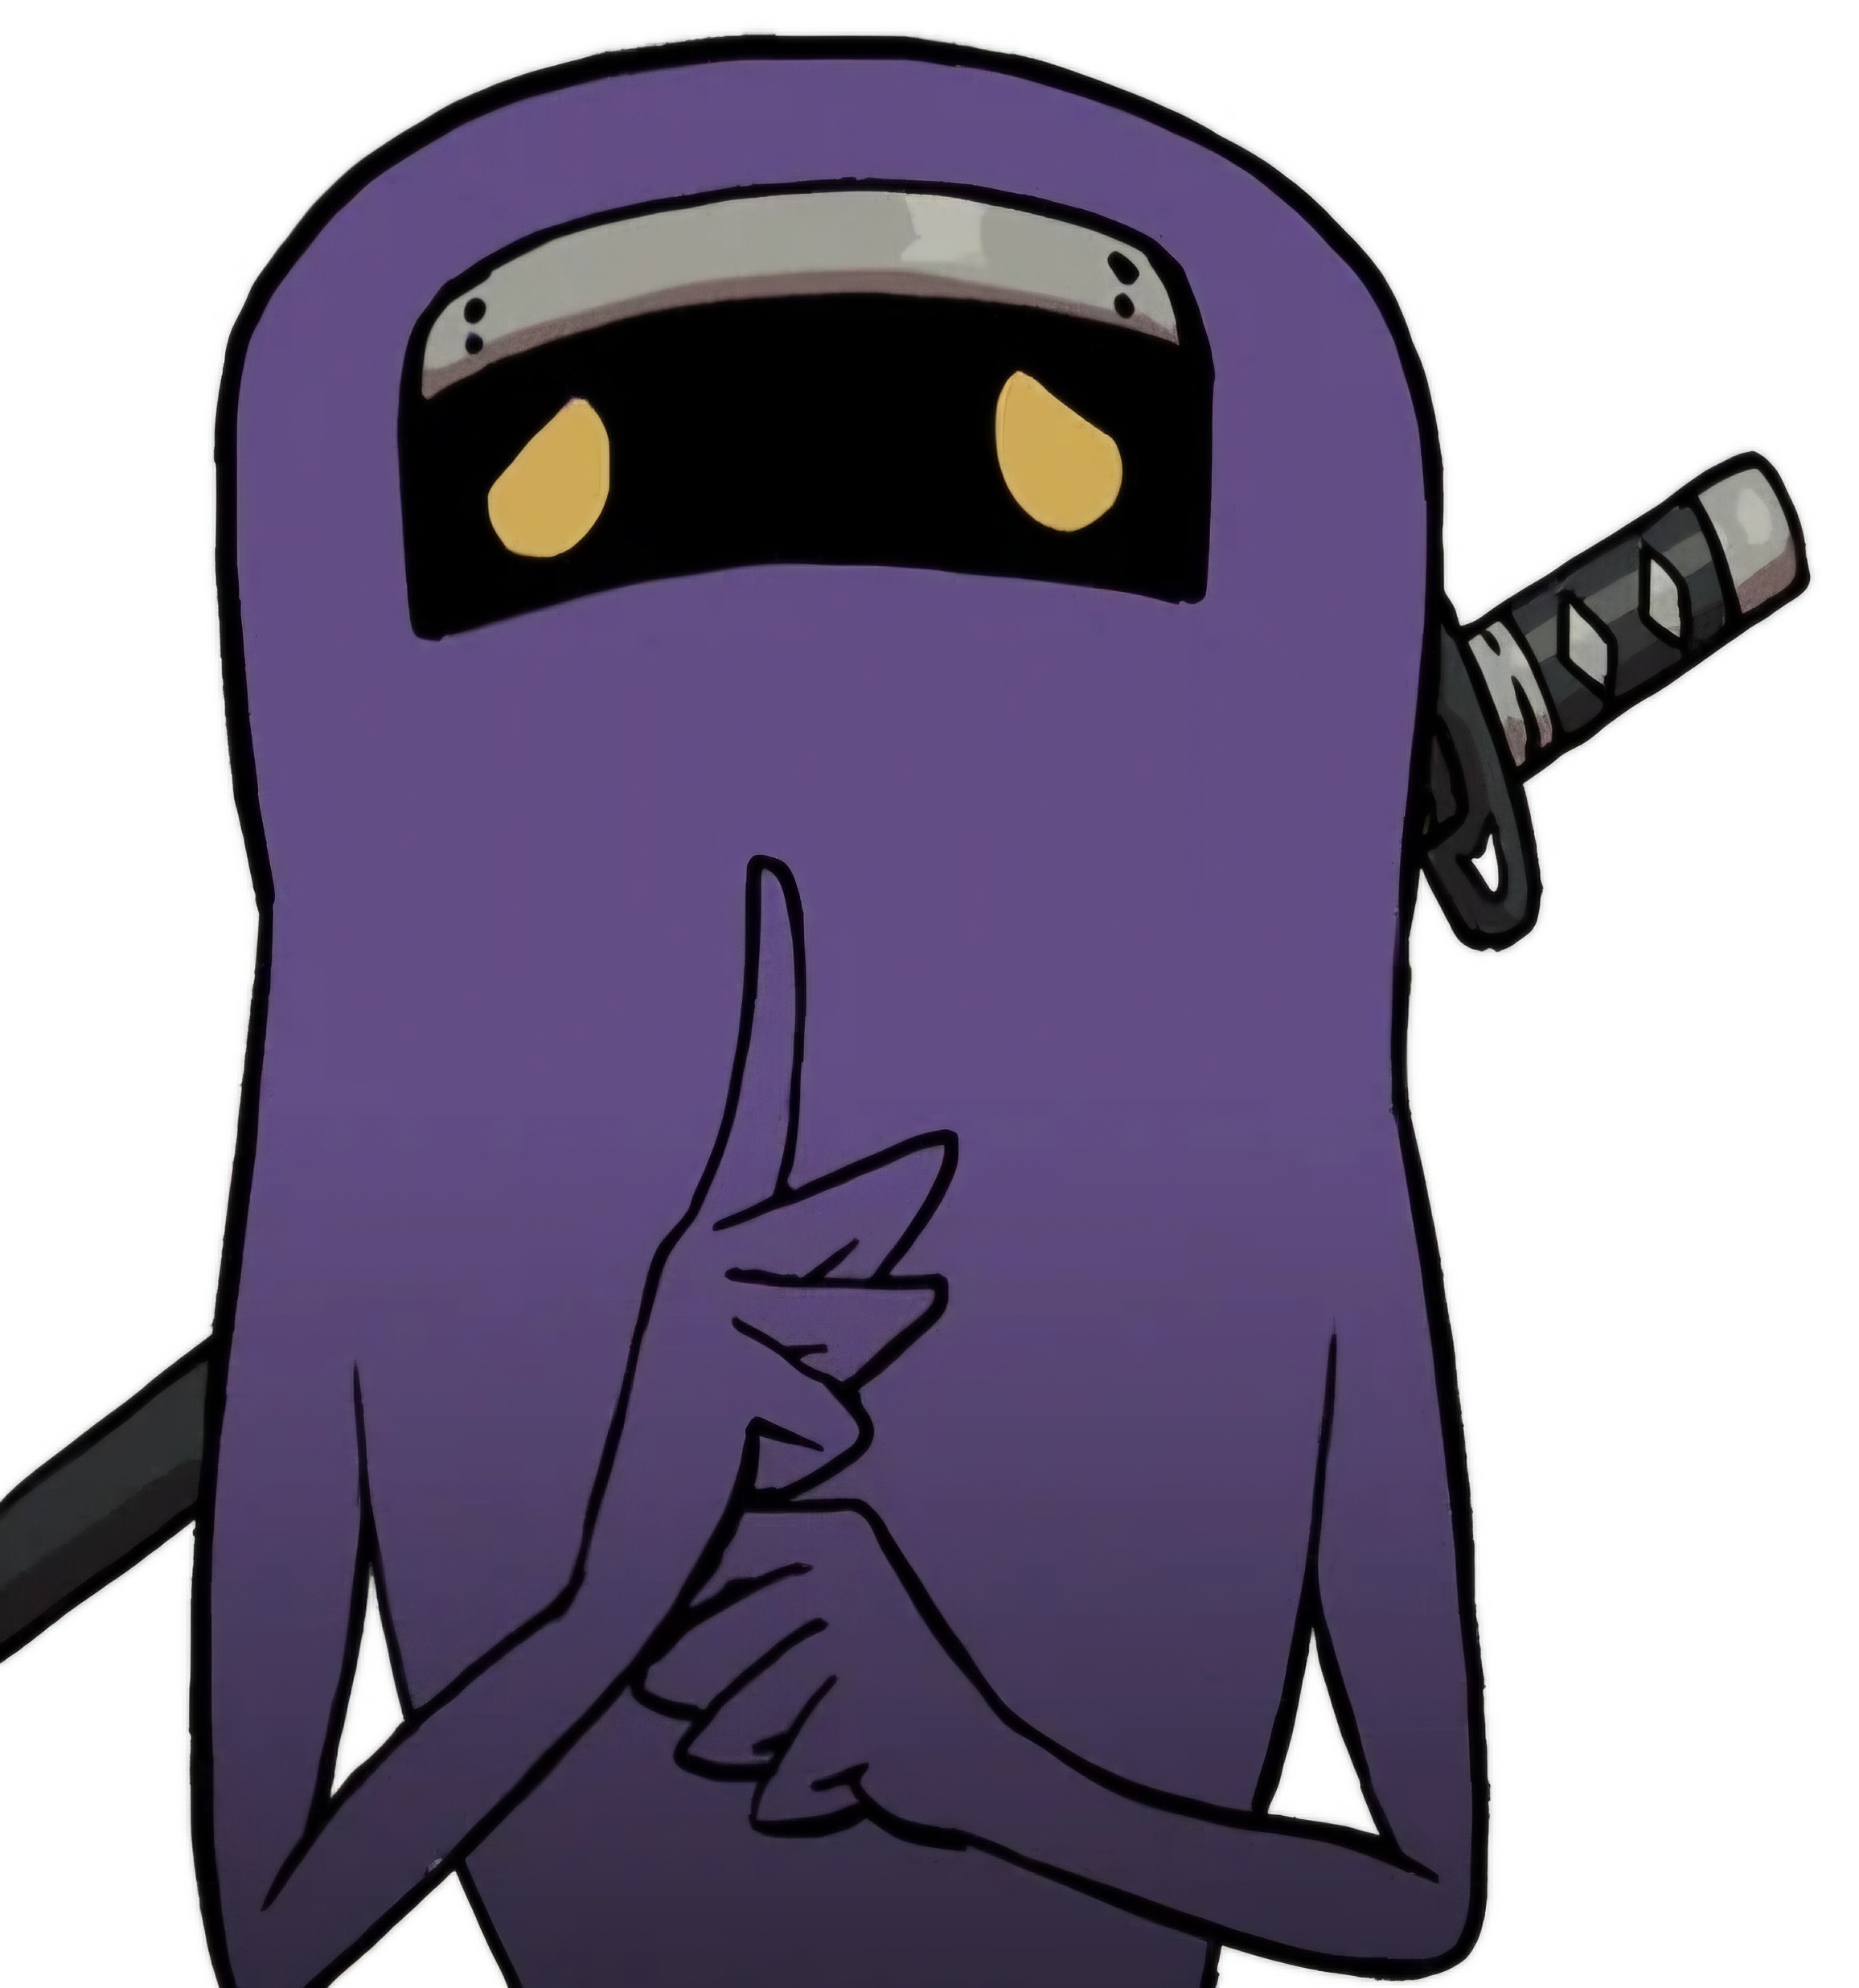 Dimnobi's avatar